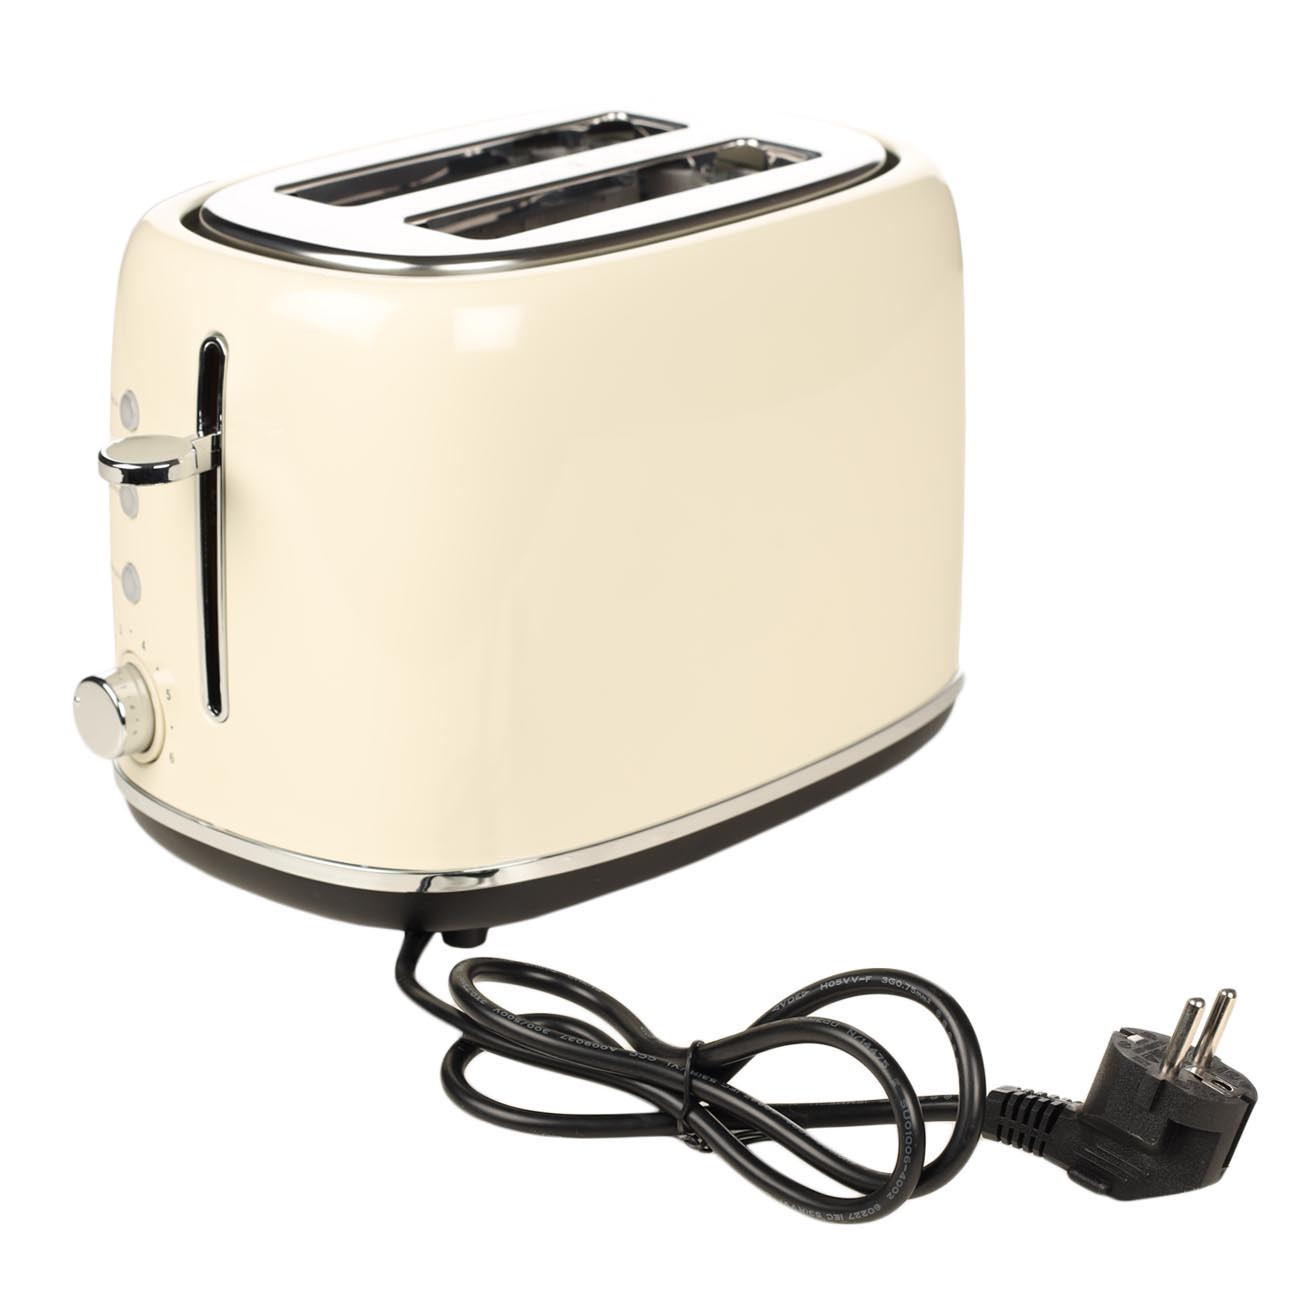 Тостер электрический, 730-870 Вт, 6 режимов, сталь/пластик, бежевый, Vintage kitchen изображение № 5